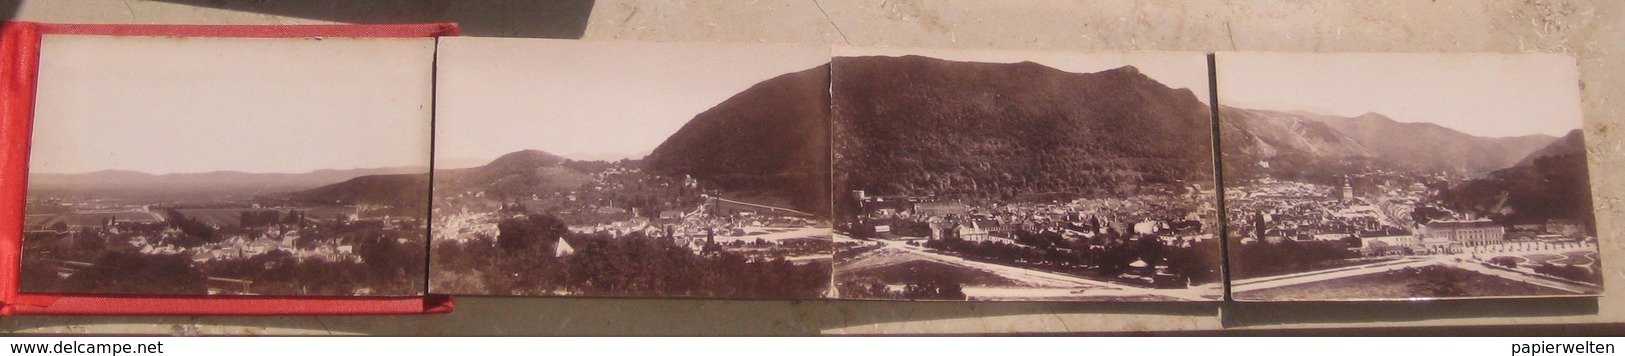 Brasov / Kronstadt / Brasso - Foto-Panorama Um 1890 (keine Ansichtskarte) - Romania